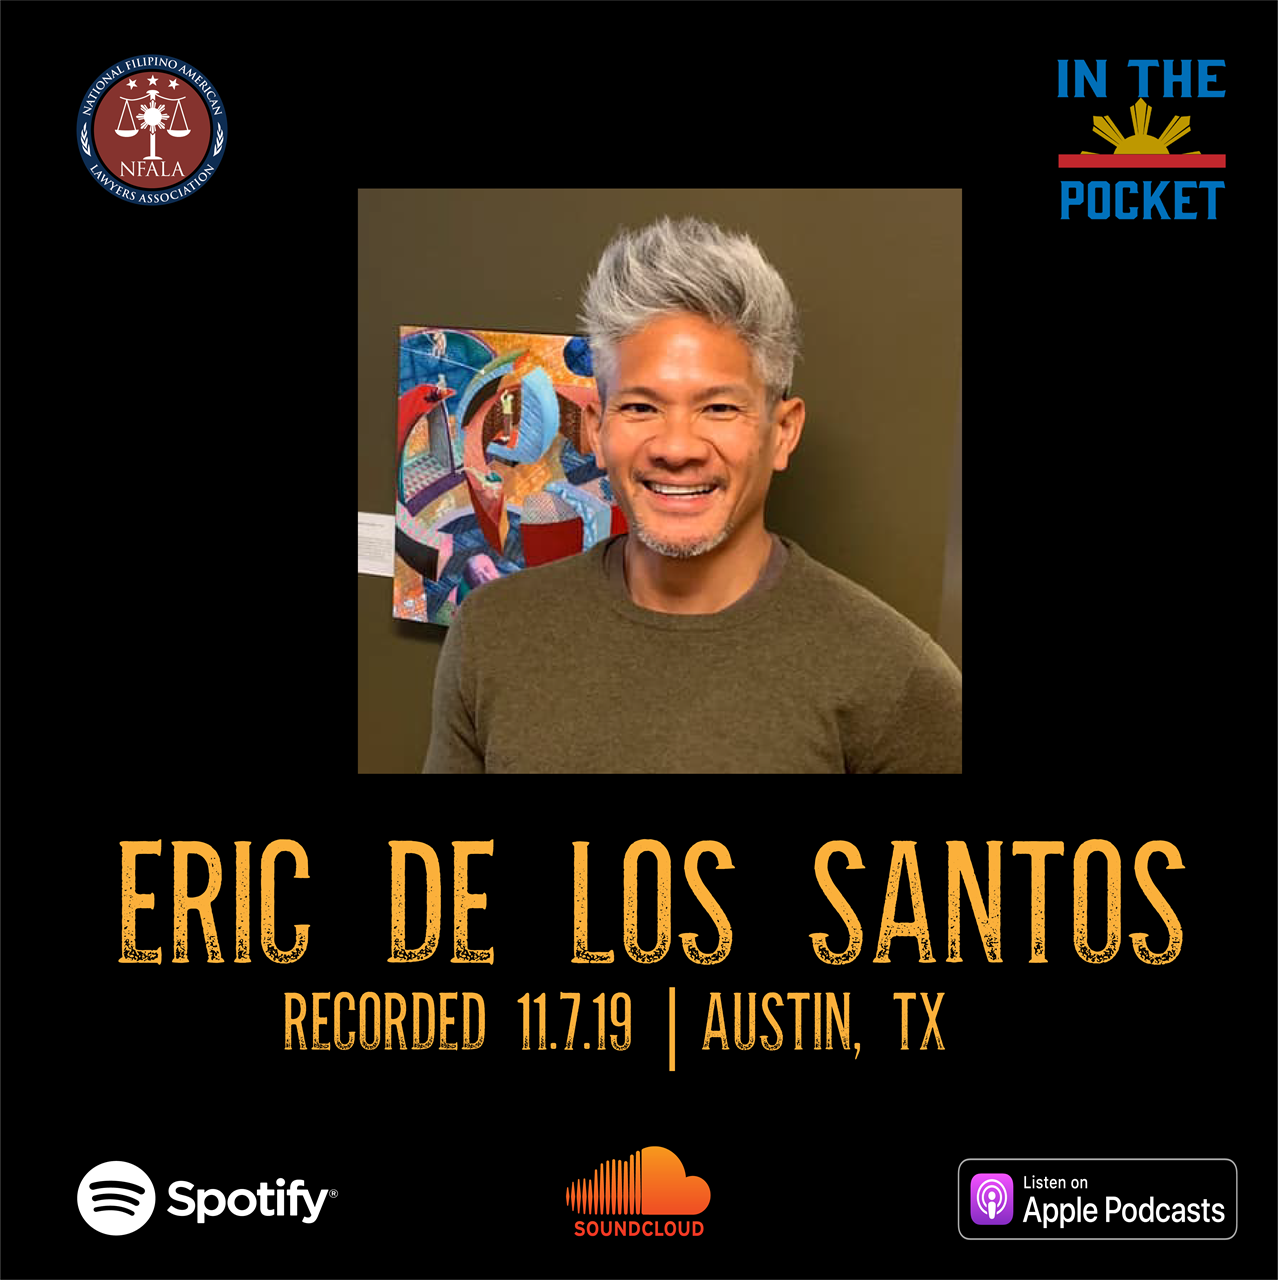 Episode 2: Eric de los Santos